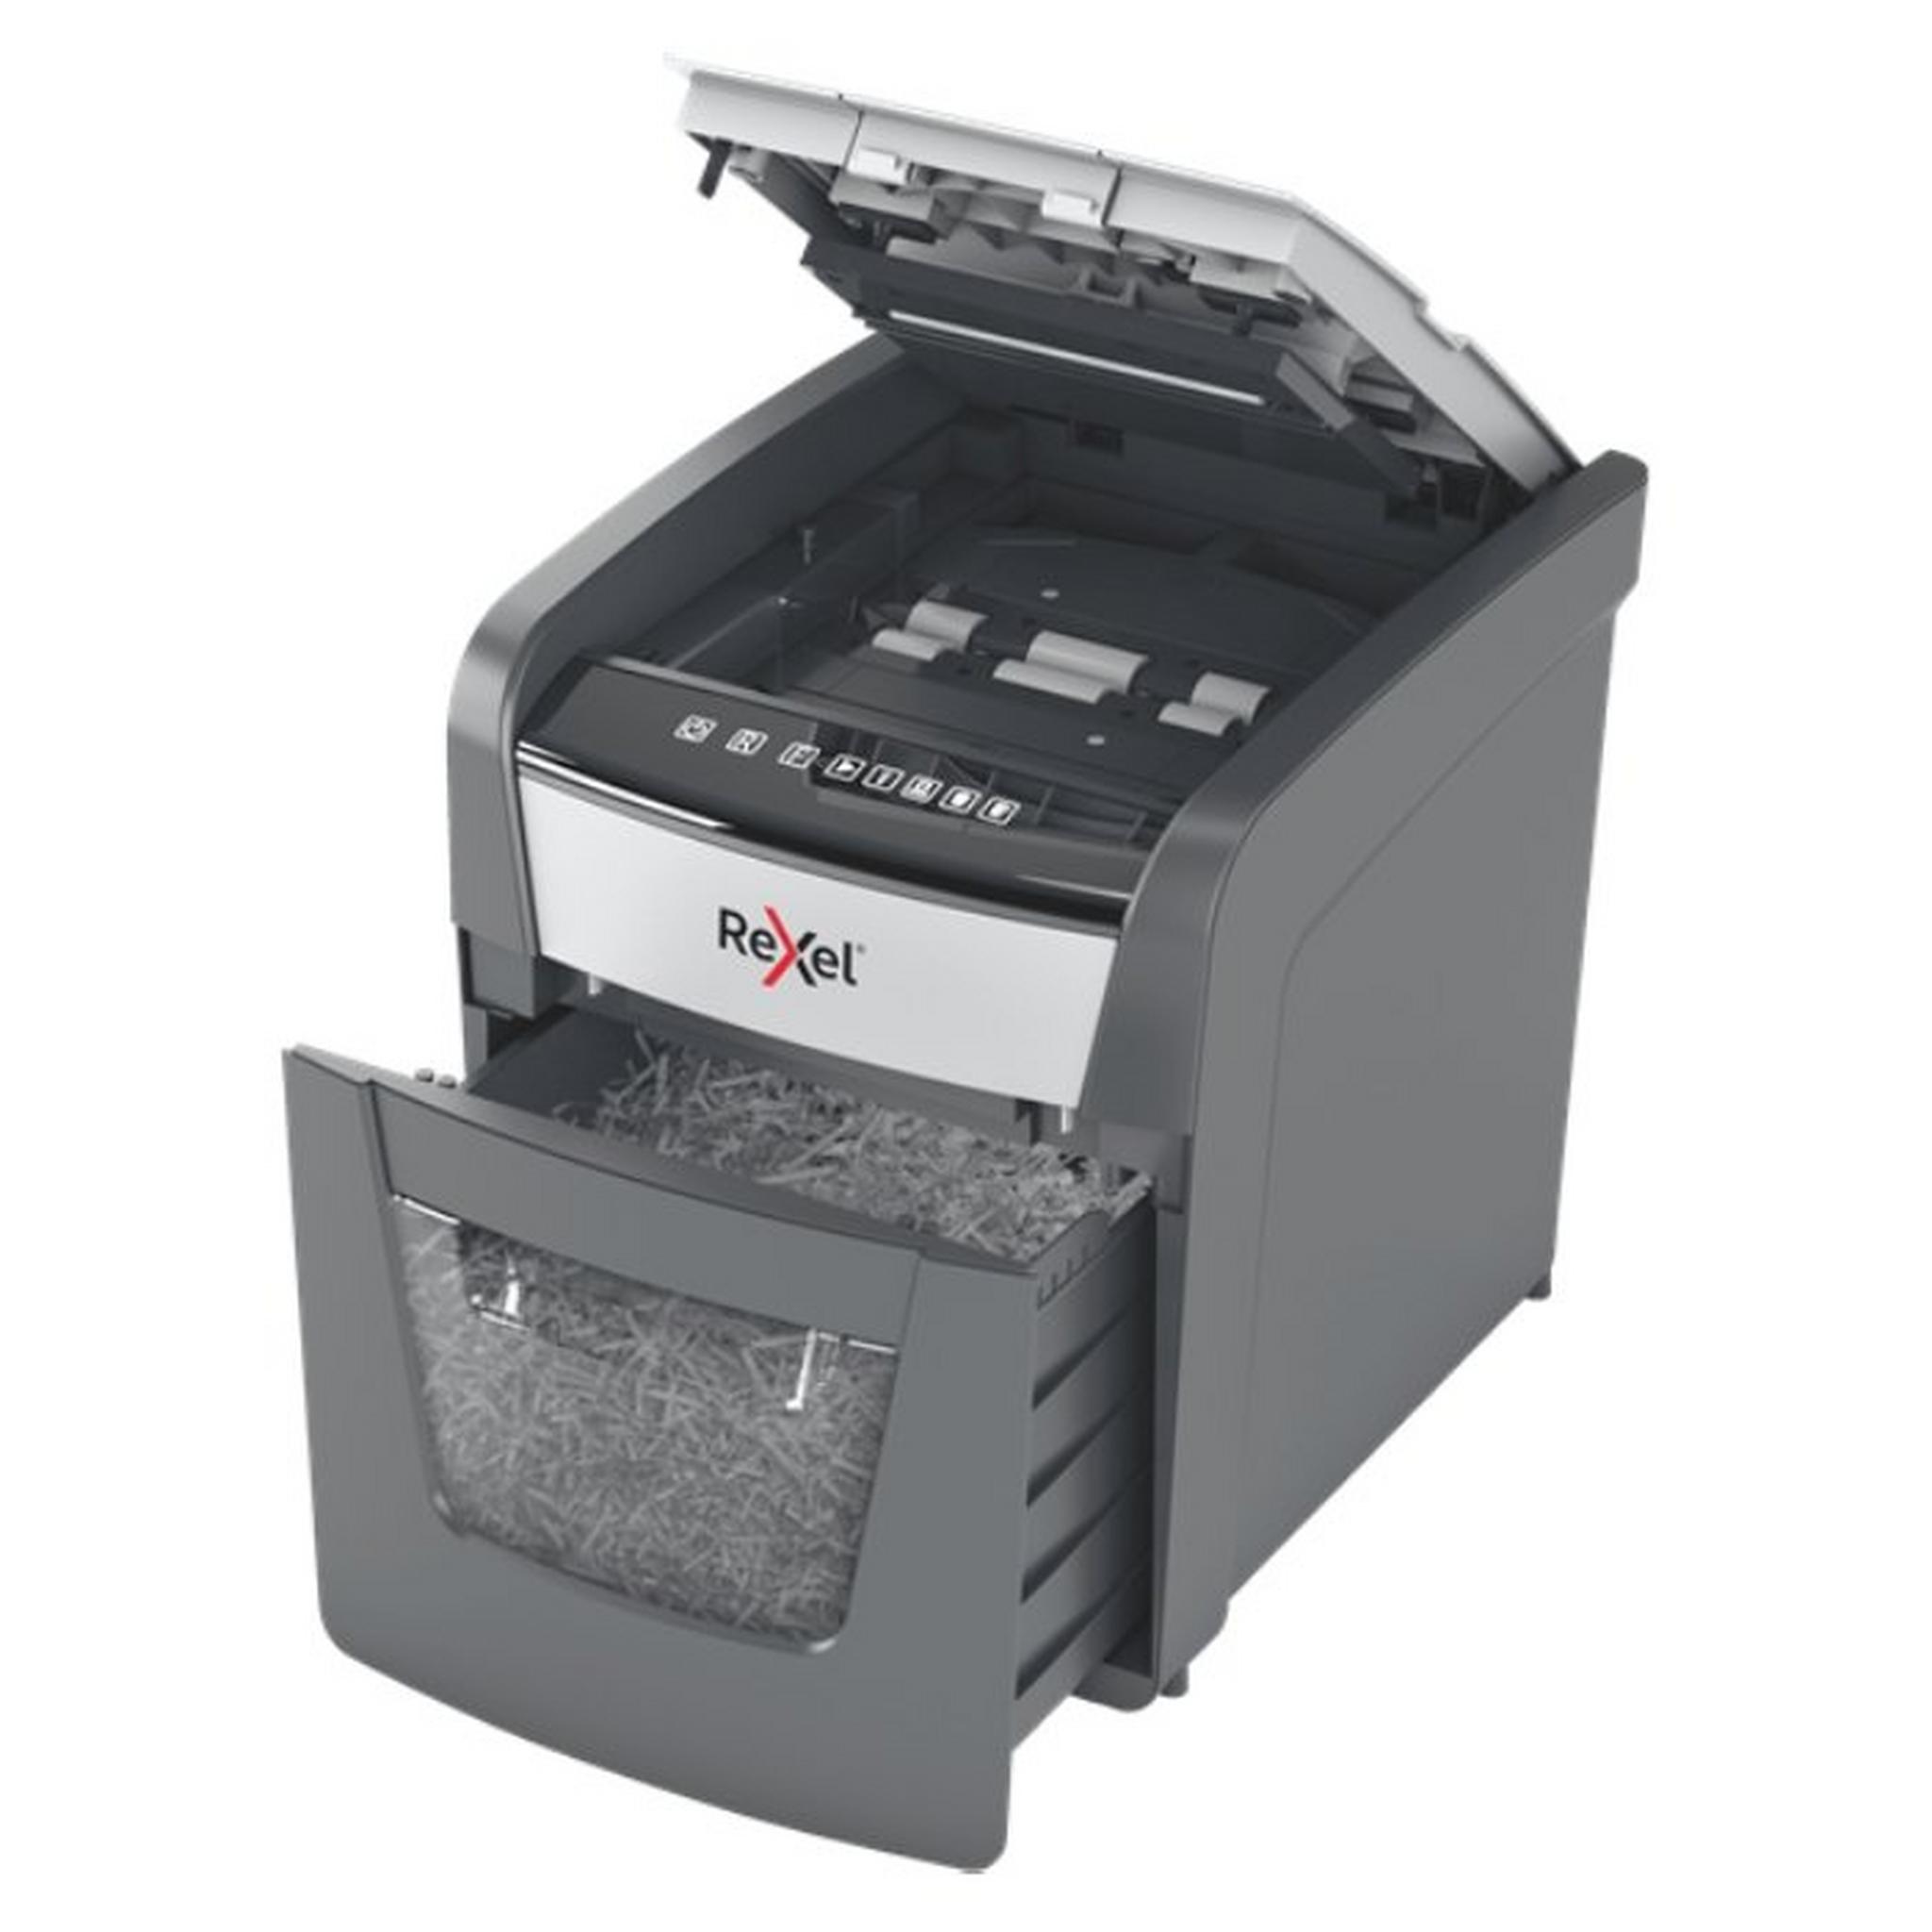 ماكينة تمزيق الورق اوبتيم اوتو فيد بلس 50 اكس من ريكسيل